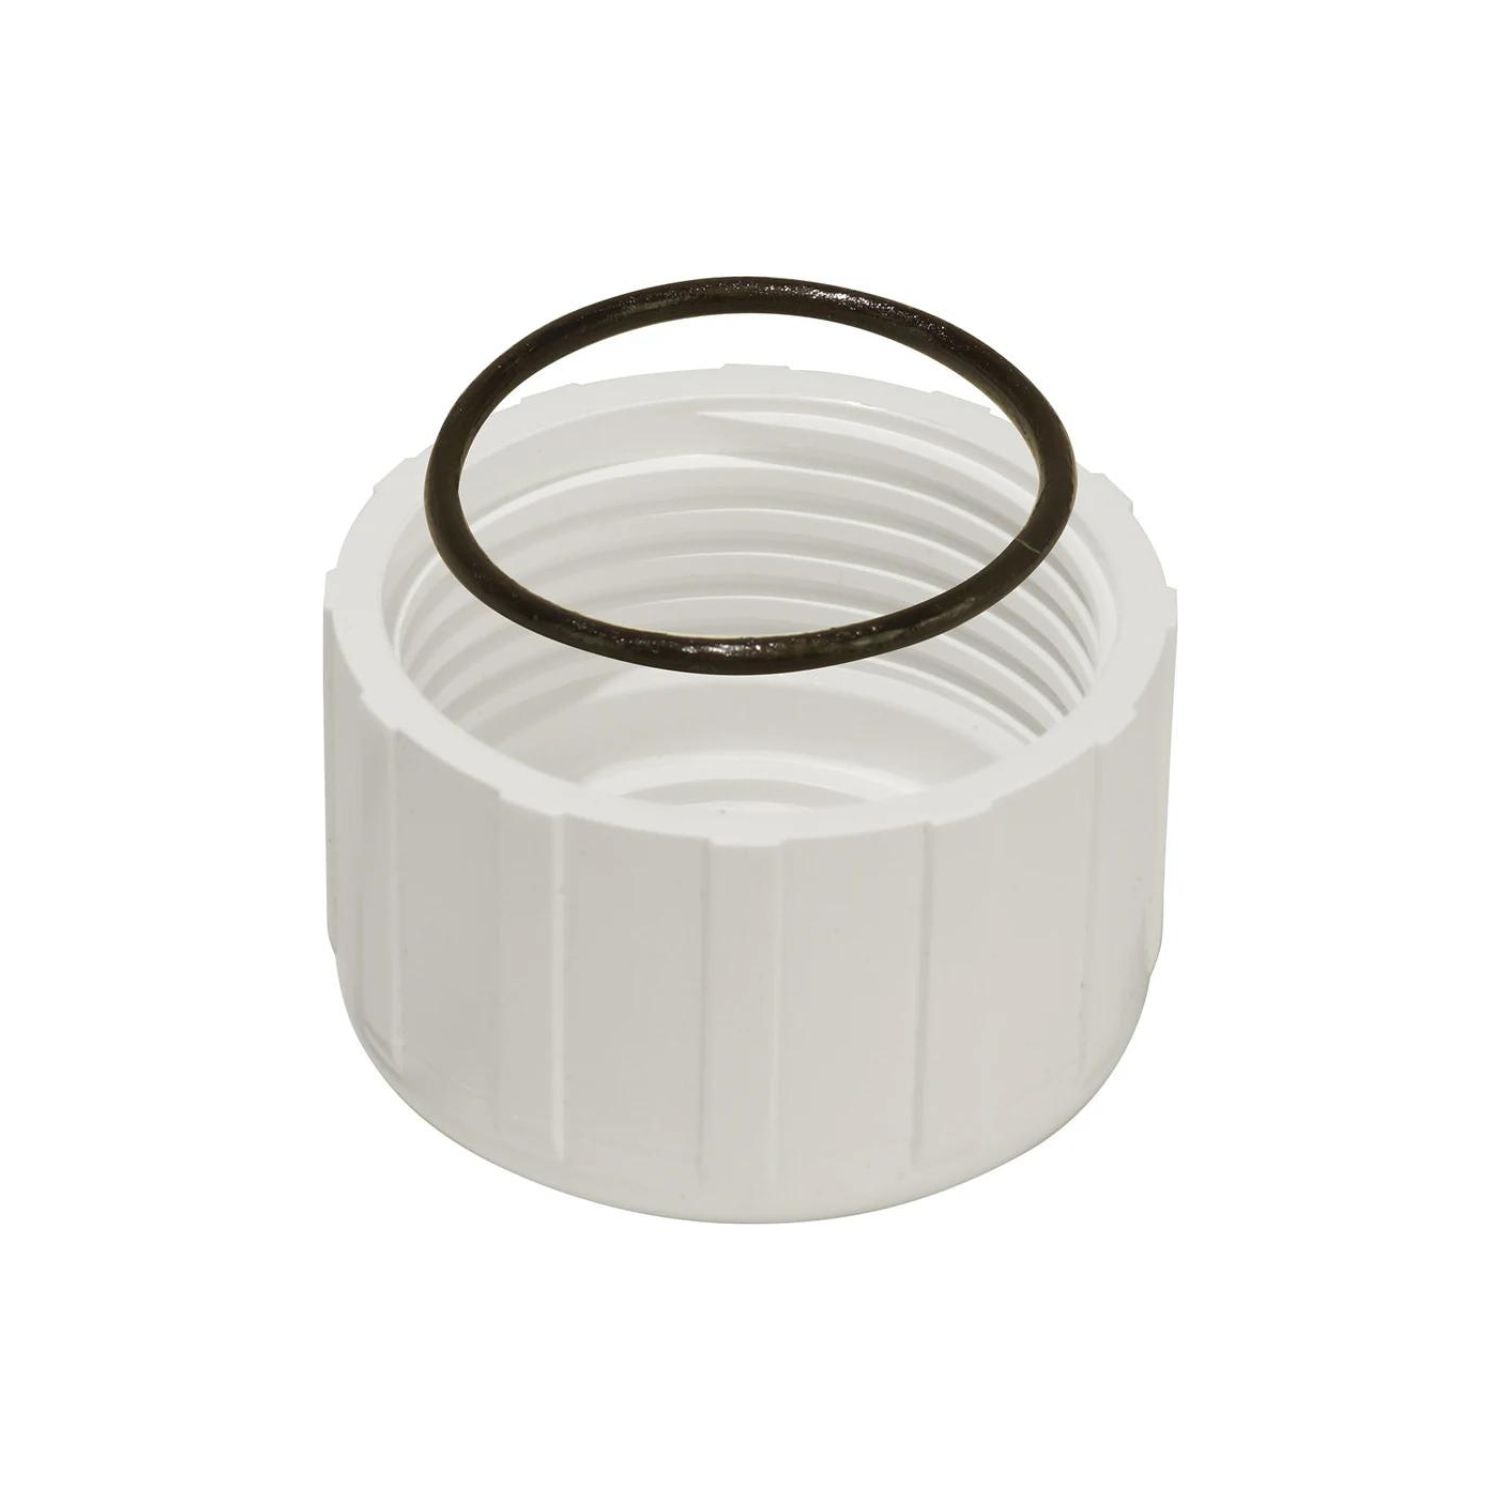 O-Ring for APEC ESSENCE RO Membrane Housing Cap (membrane housing cap sold separately)